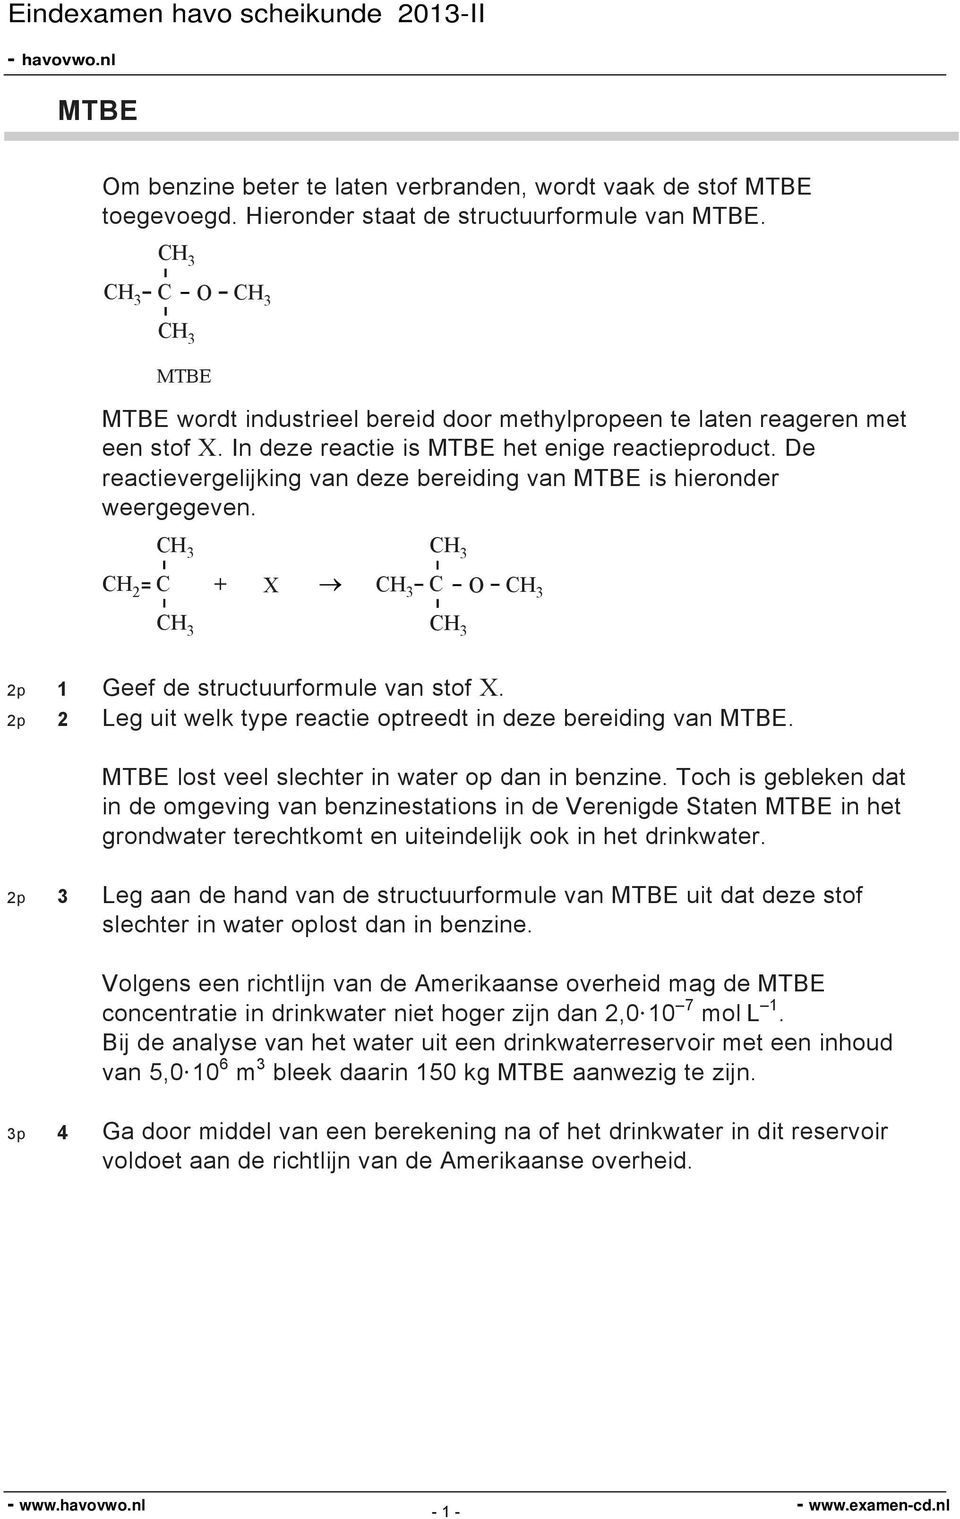 De reactievergelijking van deze bereiding van MTBE is hieronder weergegeven. 3 2 + X 3 3 3 O 3 3 2p 1 Geef de structuurformule van stof X.